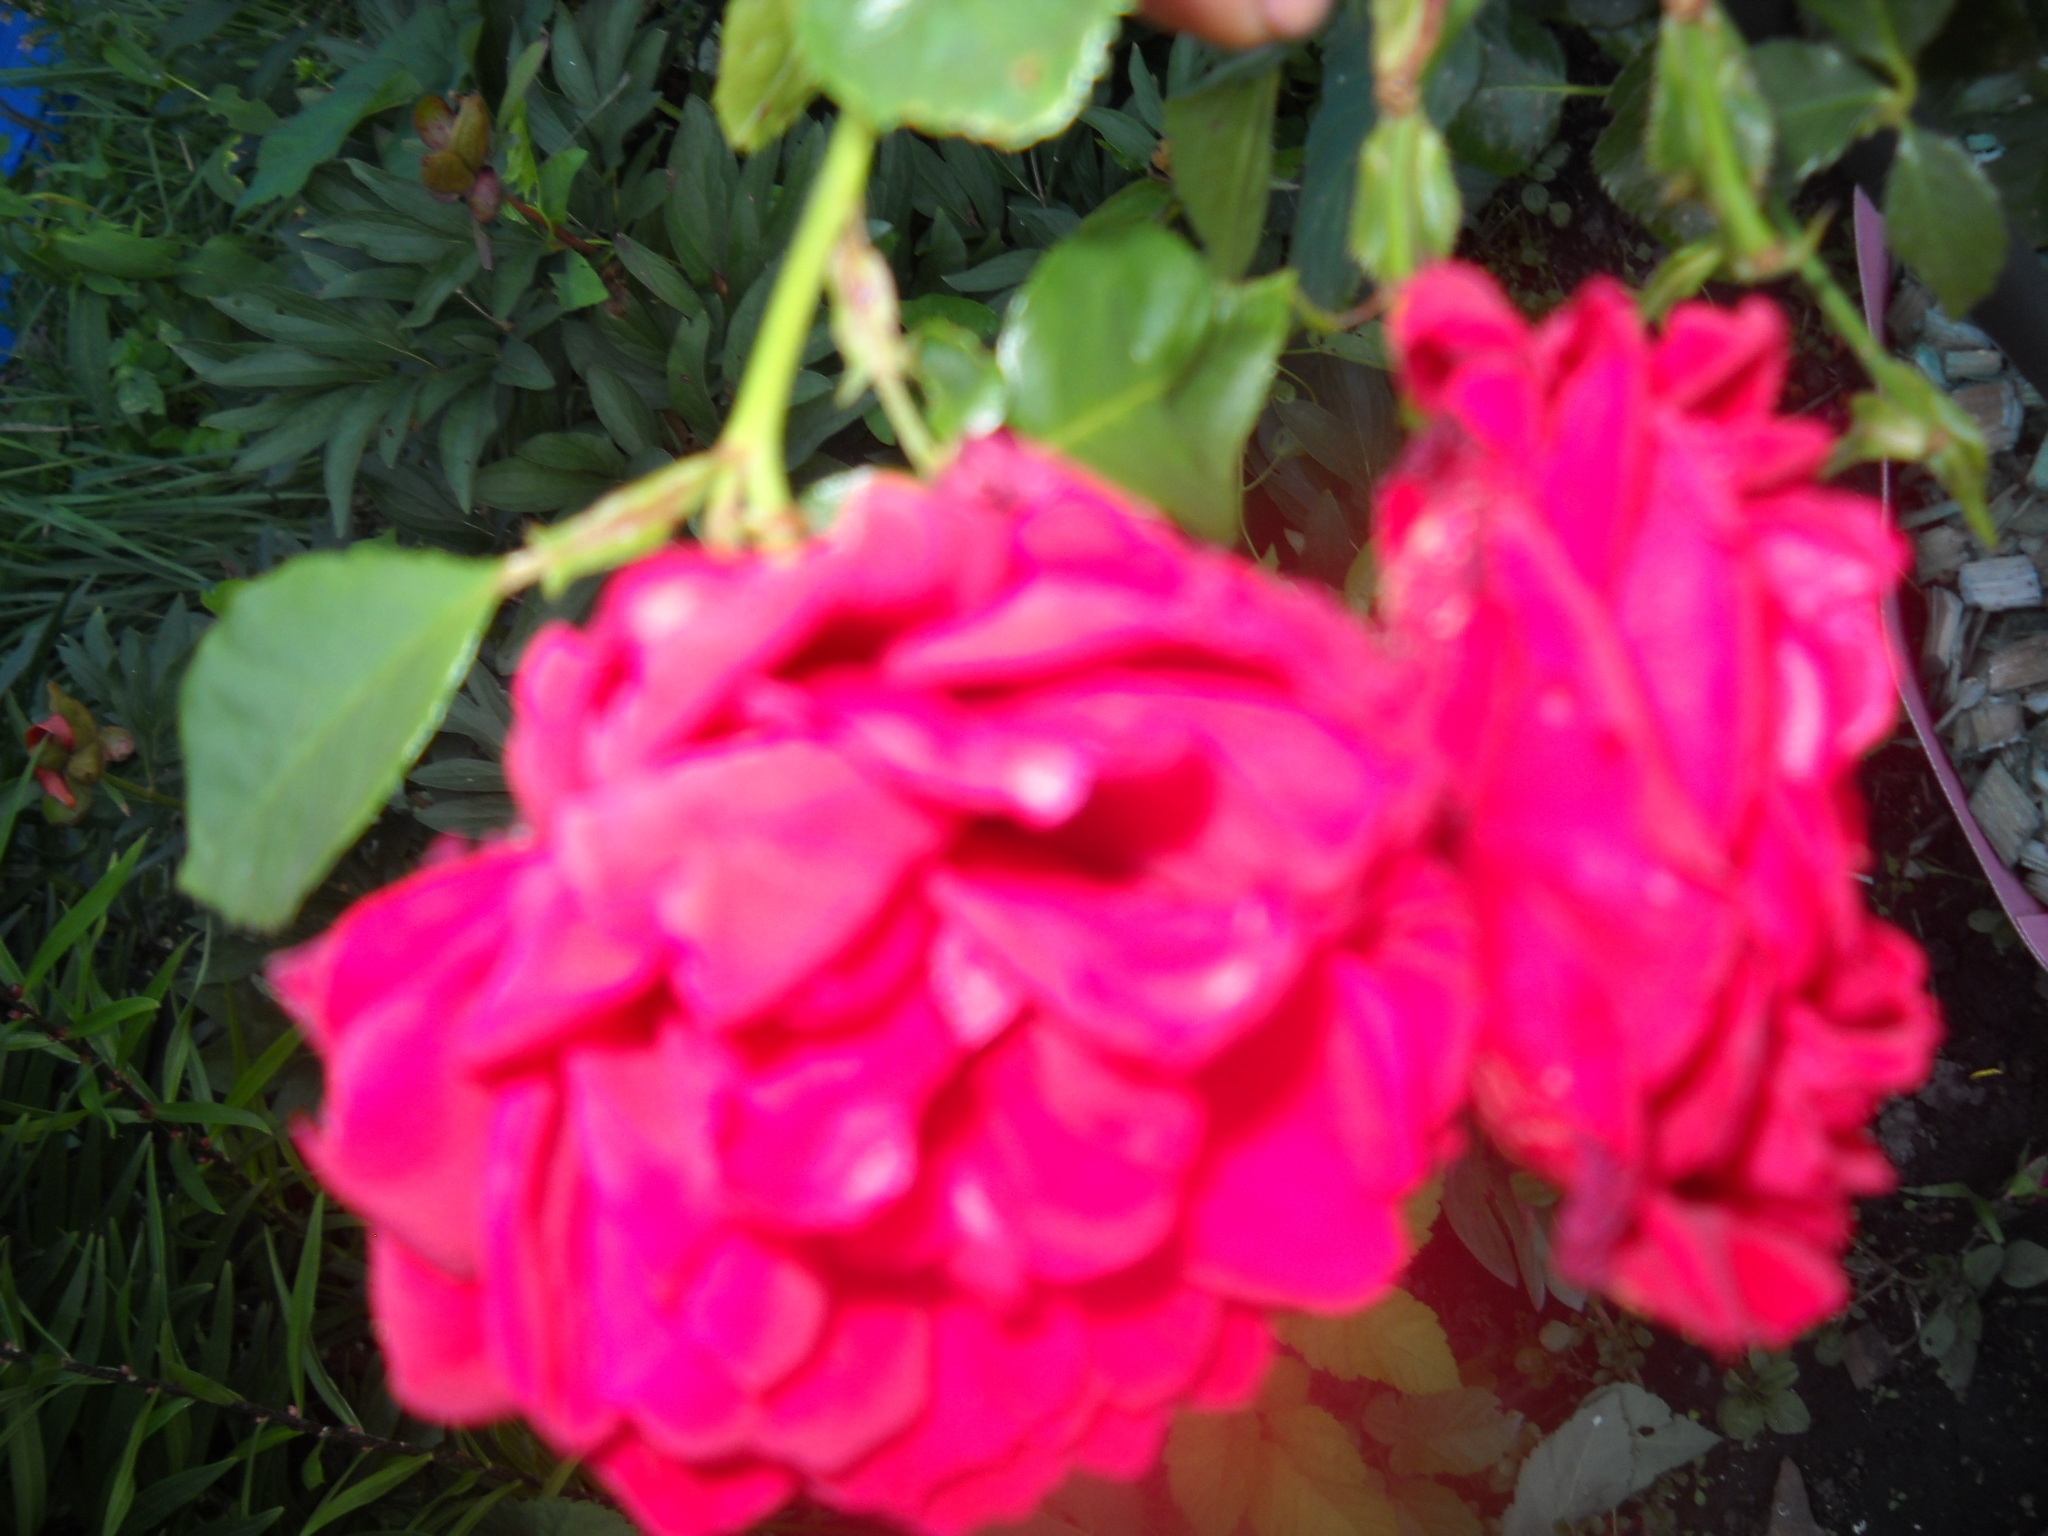 Роза спутник фото и описание